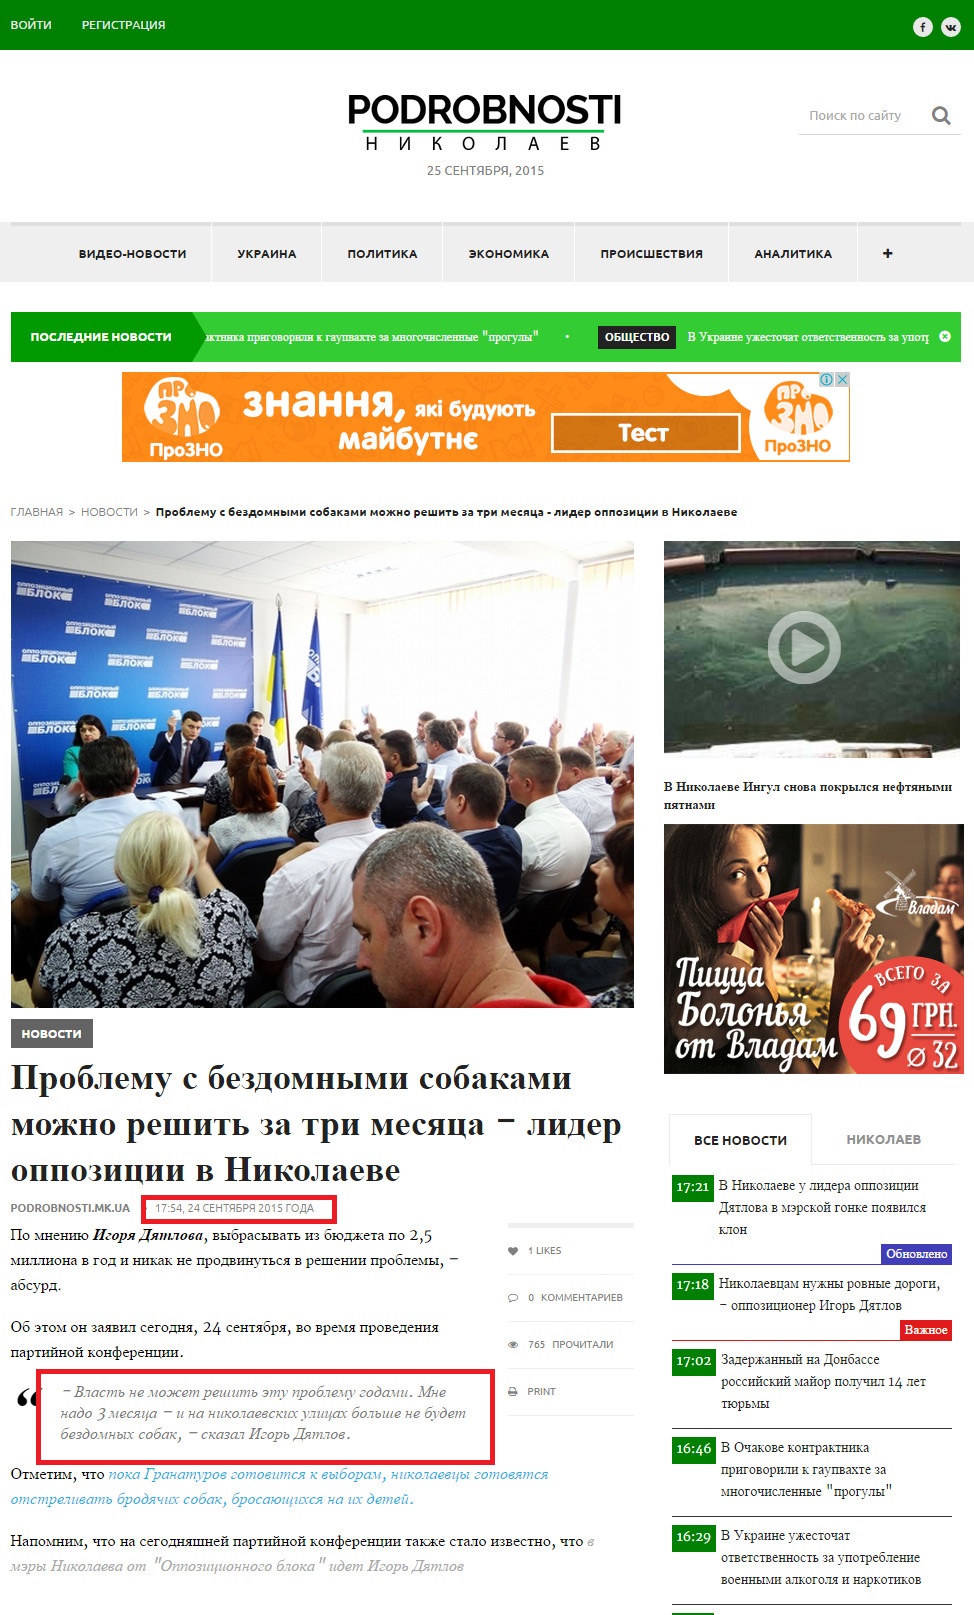 http://podrobnosti.mk.ua/2015/09/24/problemu-s-bezdomnymi-sobakami-mozhno-reshit-za-tri-mesyaca---lider-oppozicii-v-nikolaeve.html